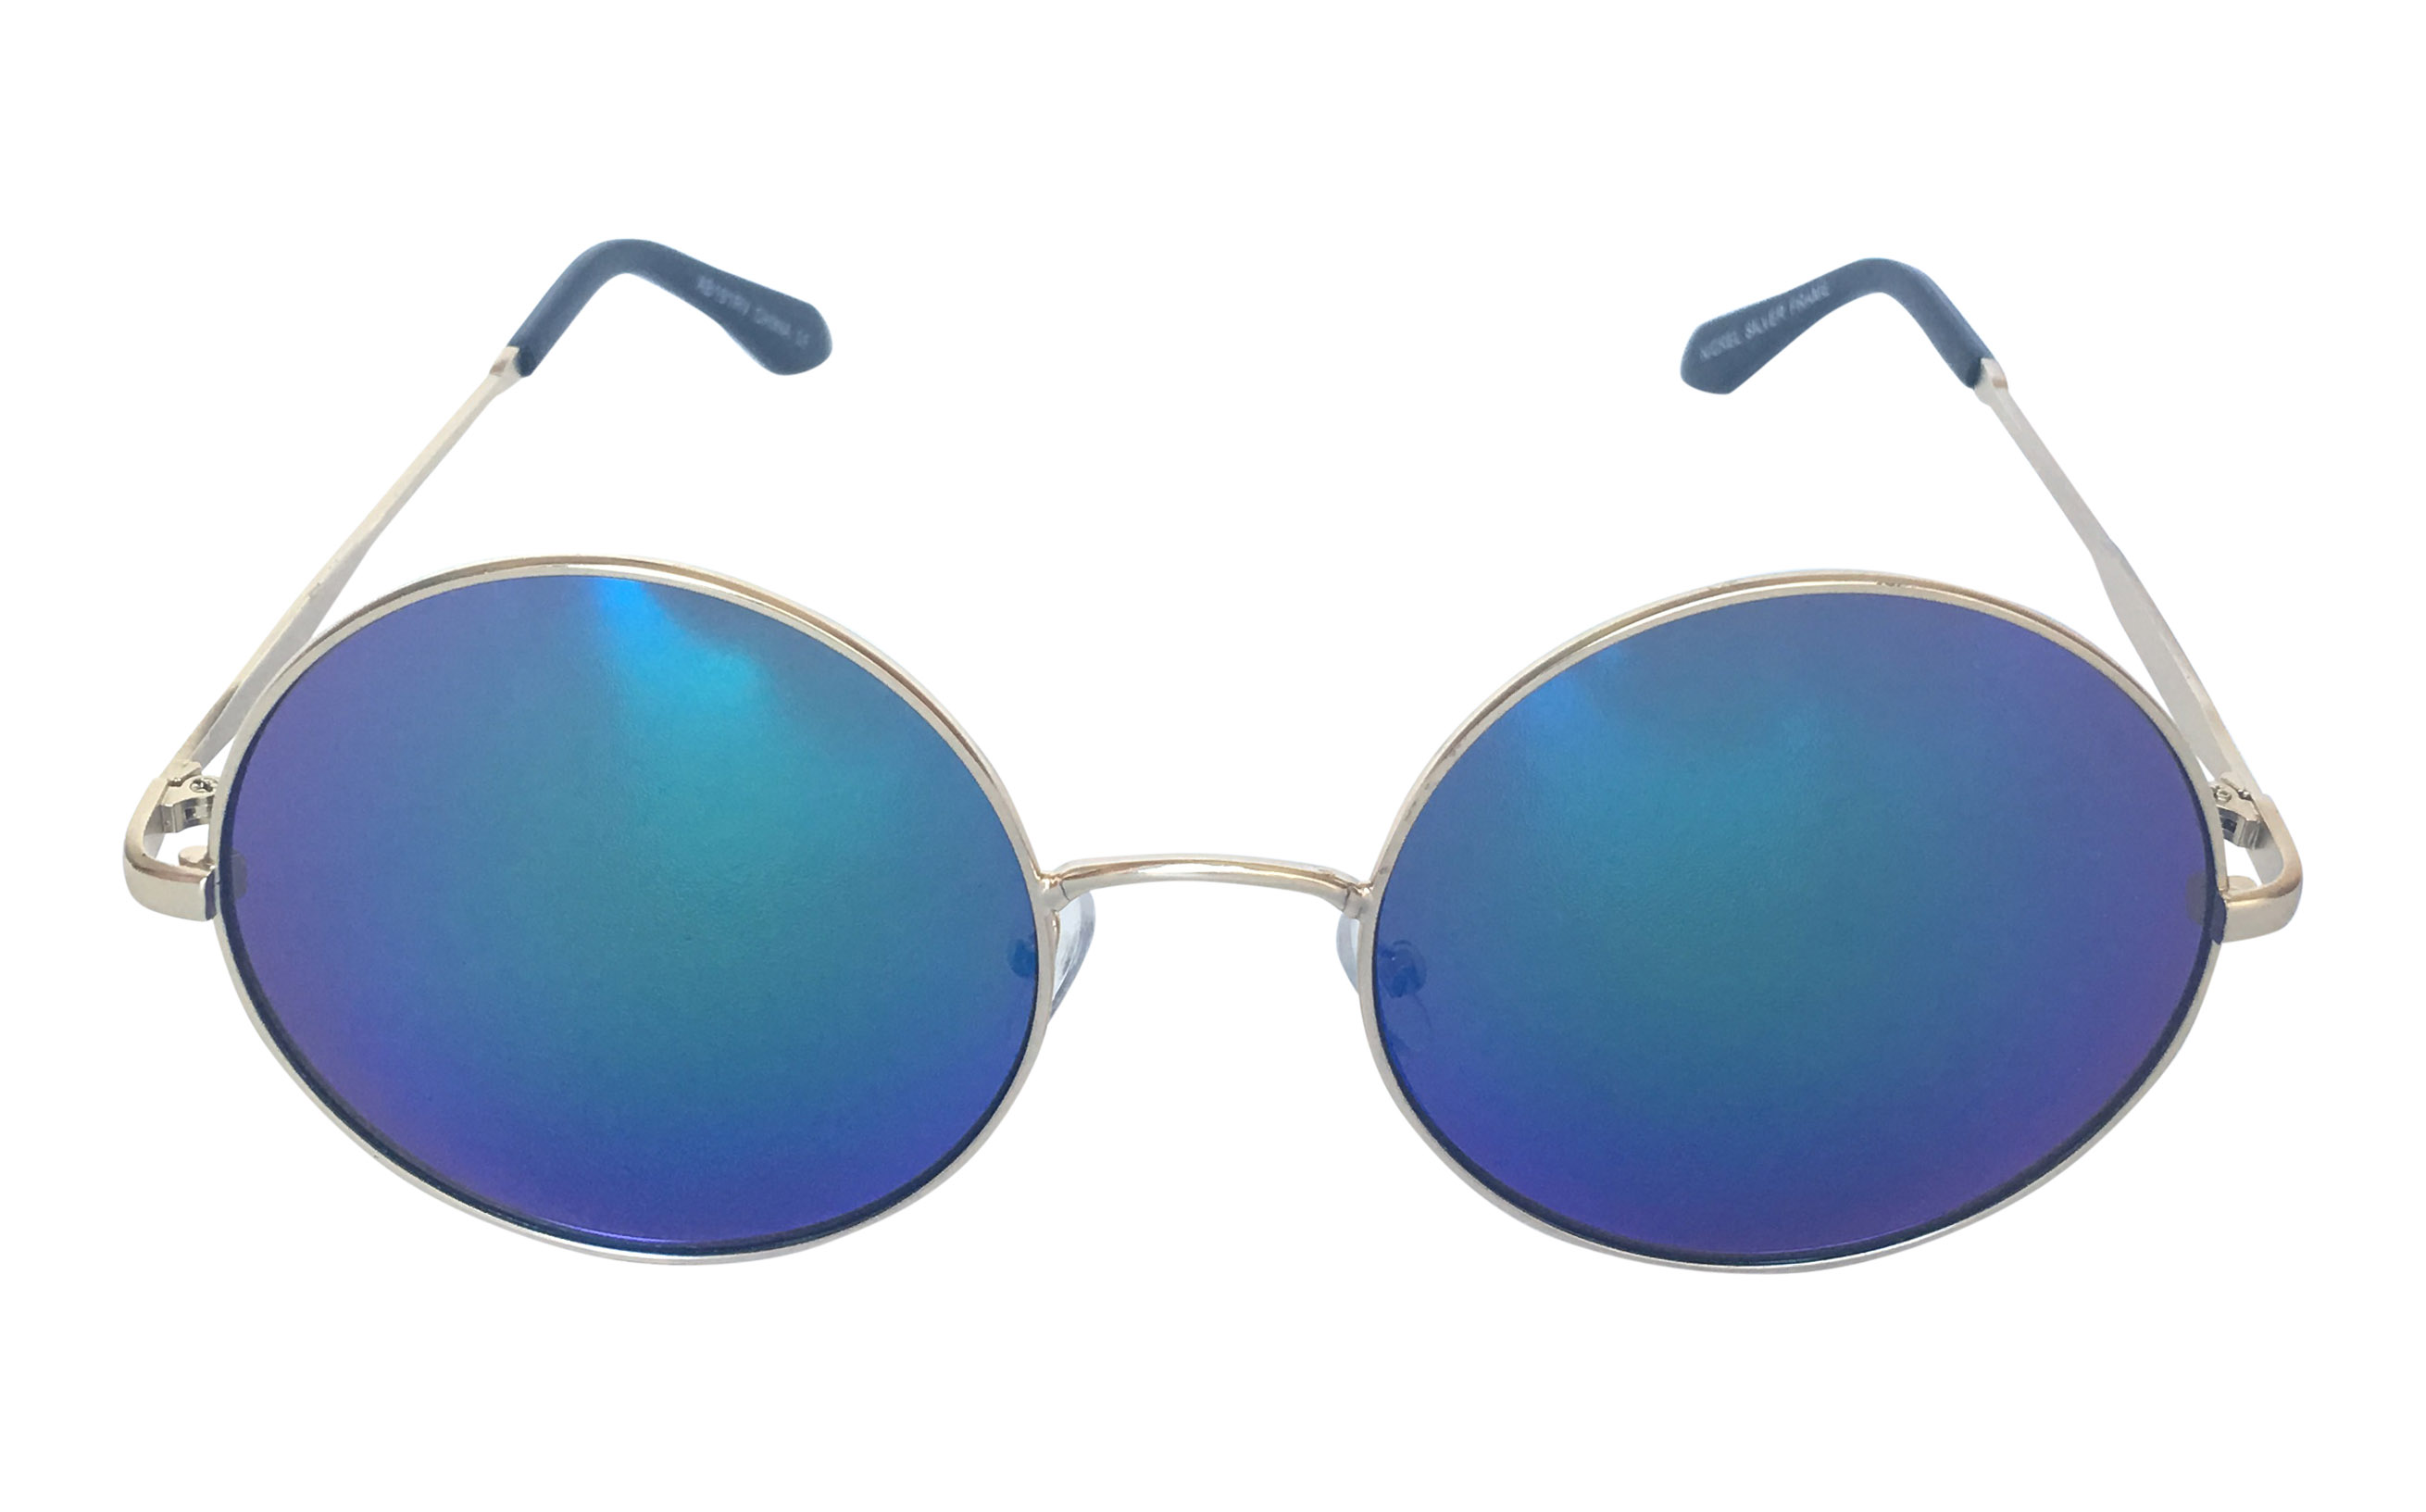 Flot stor rund solbrille med blå-grønne glas - Design nr. 3299